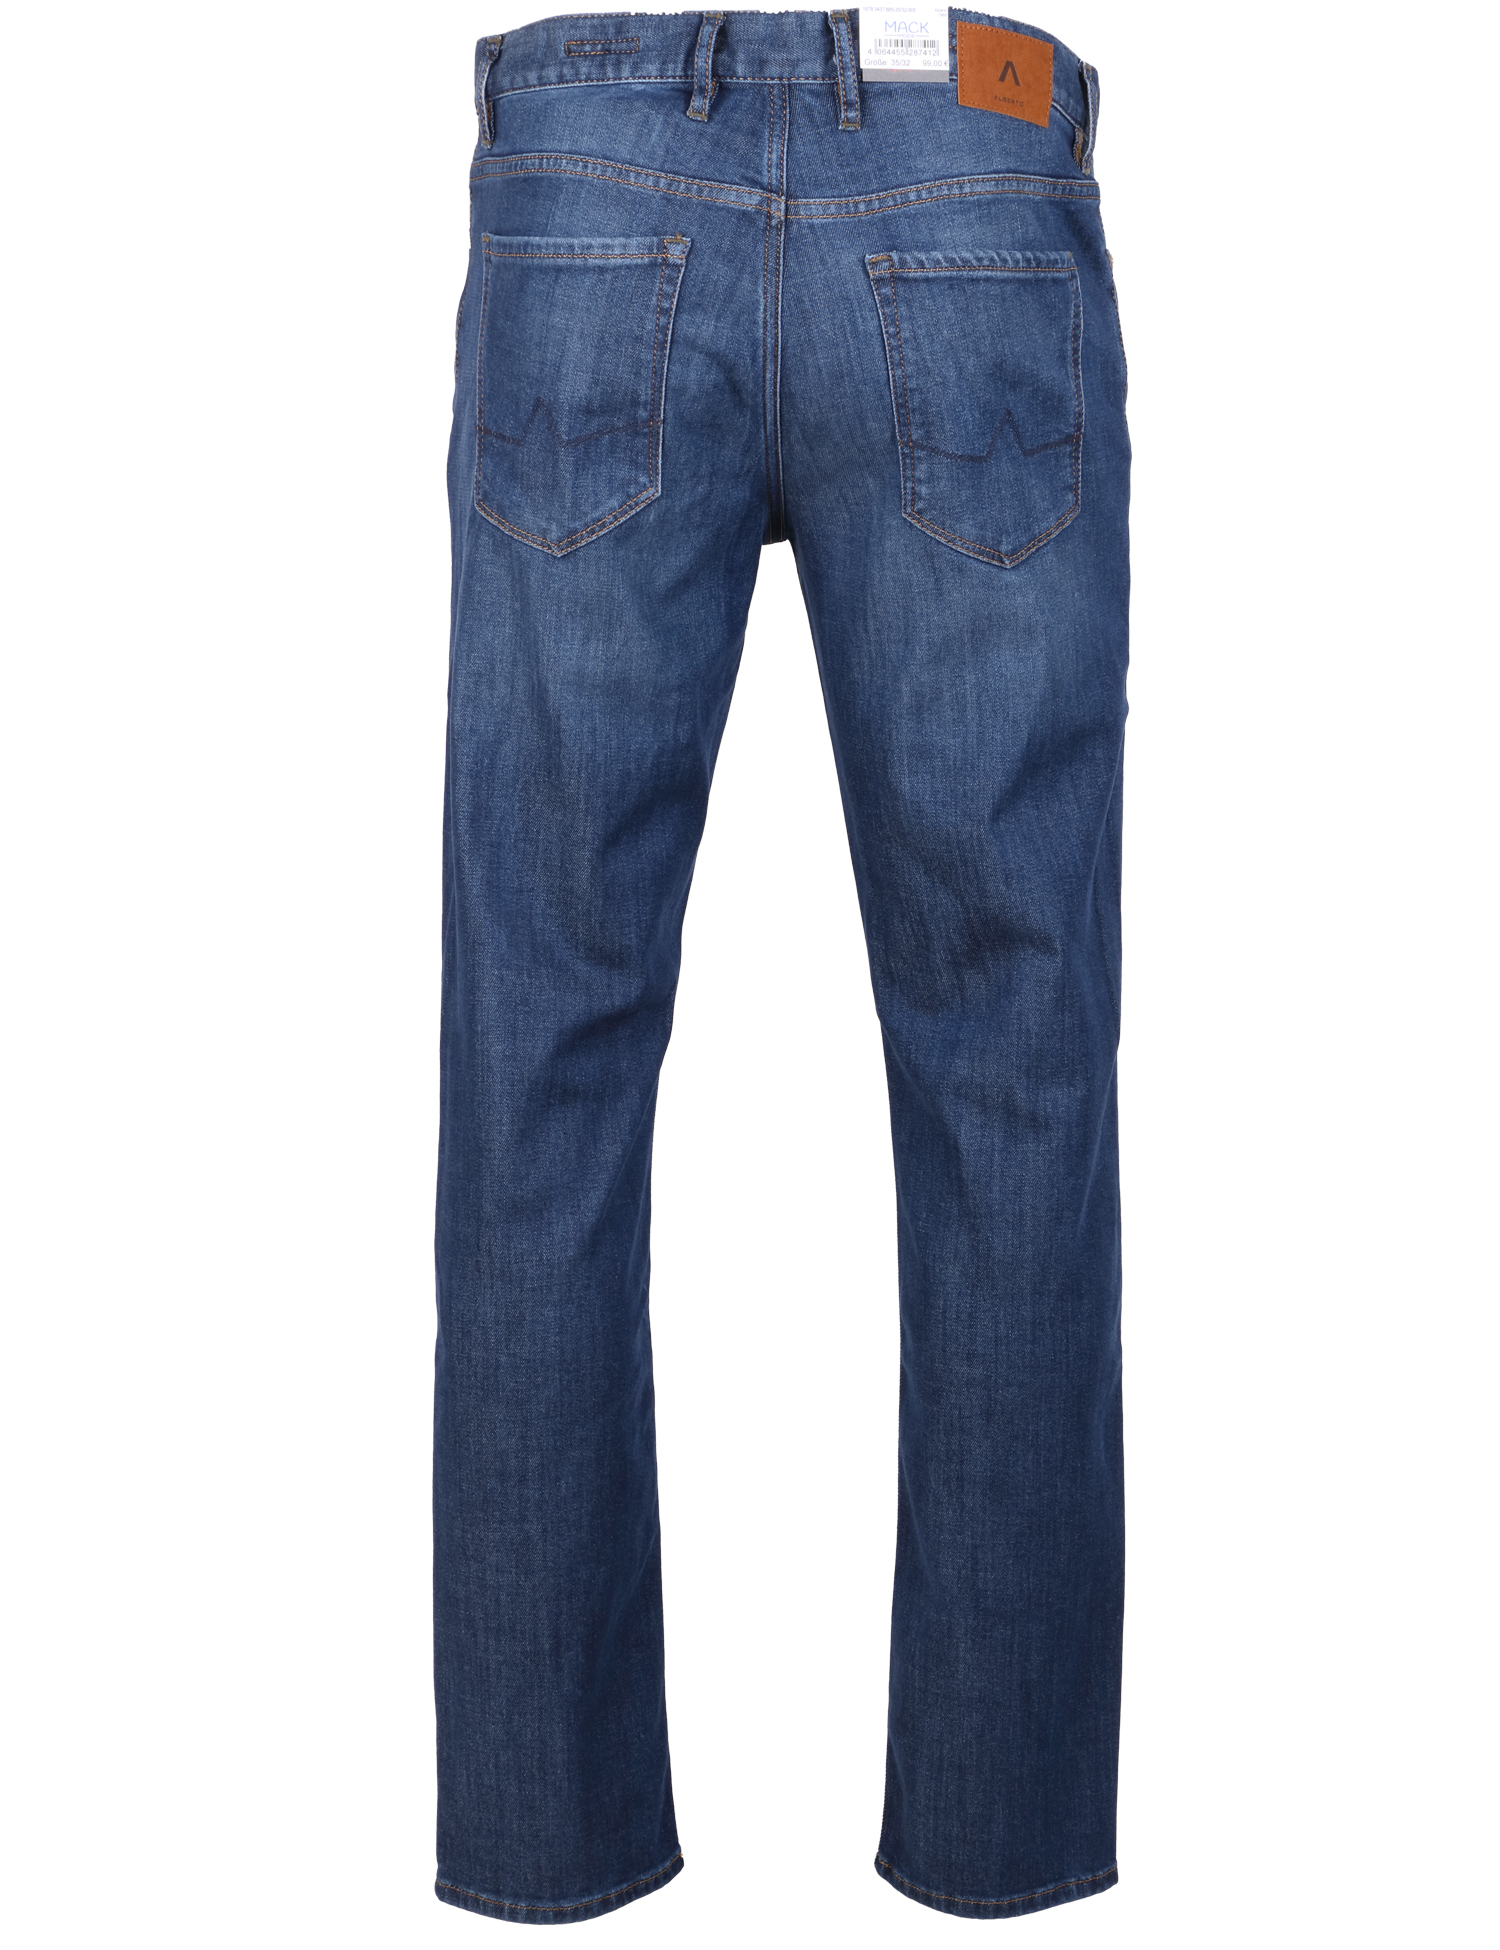 Alberto Herren Jeans Pipe regular fit - blau 34/32